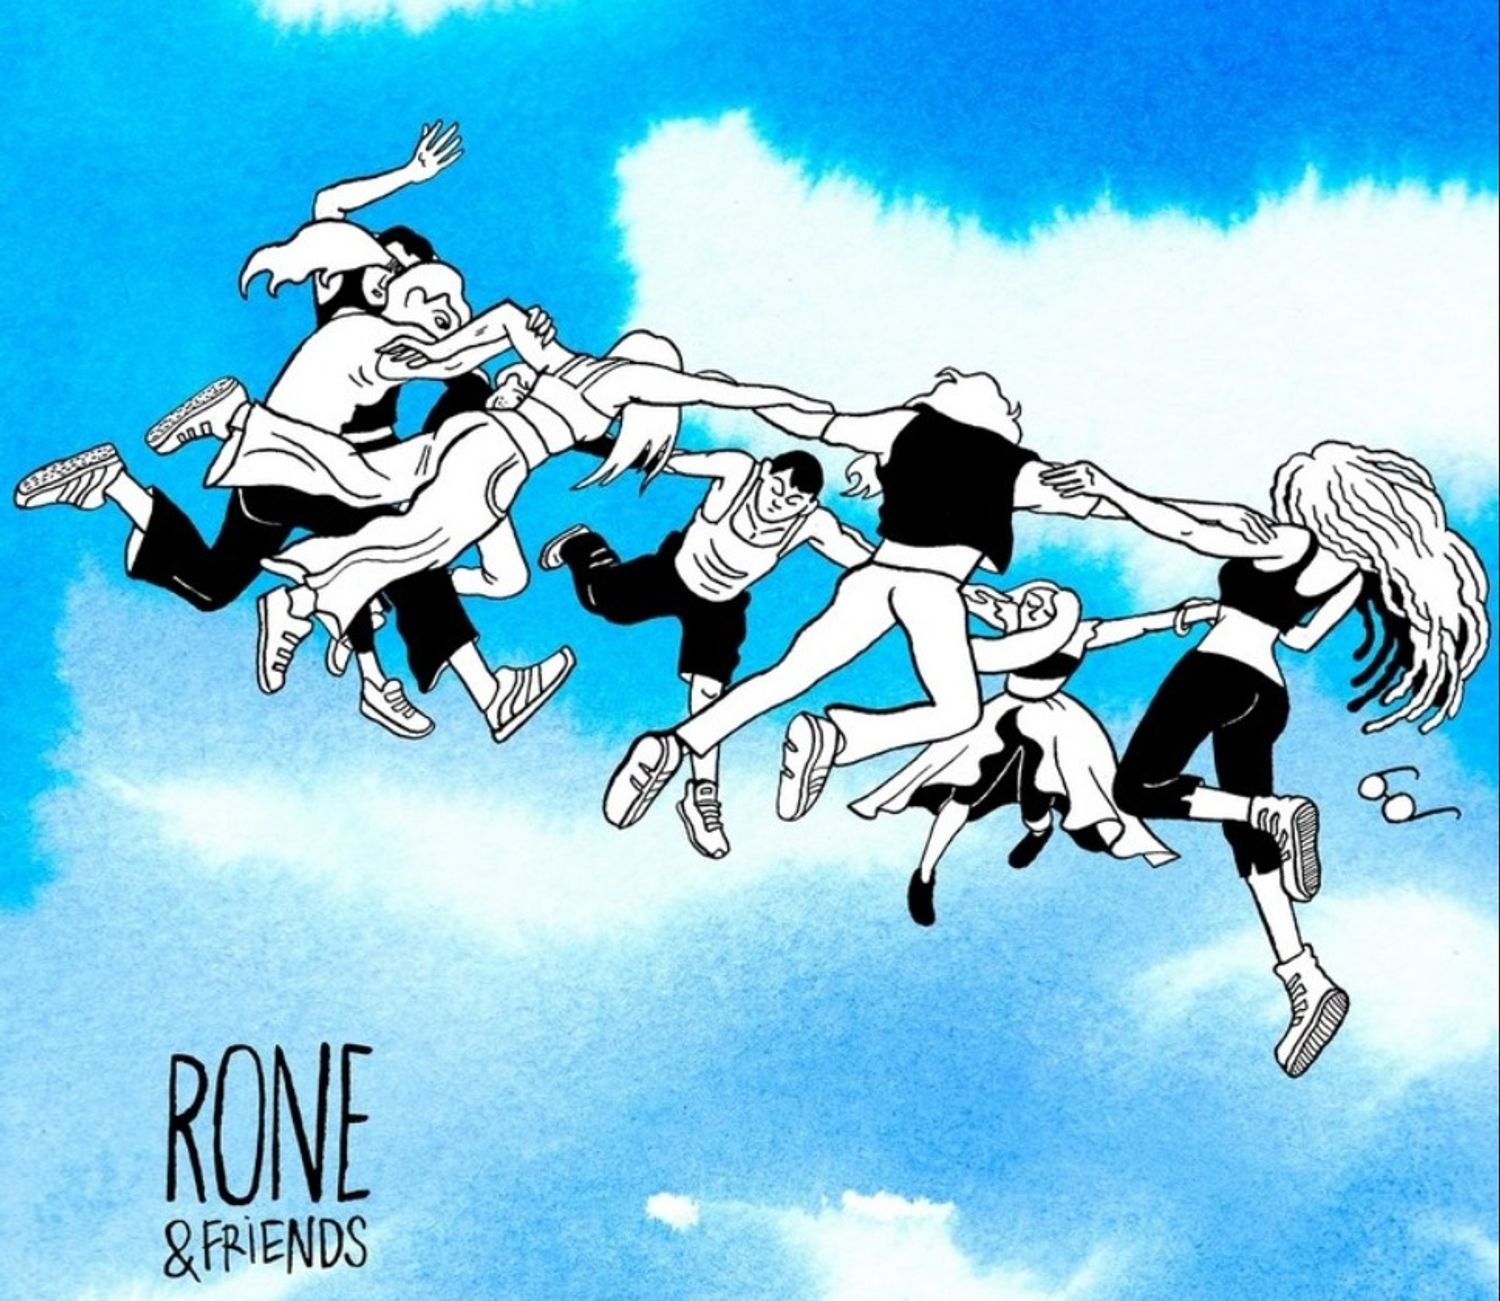 Rone dévoile son nouvel album collaboratif "Rone & Friends"